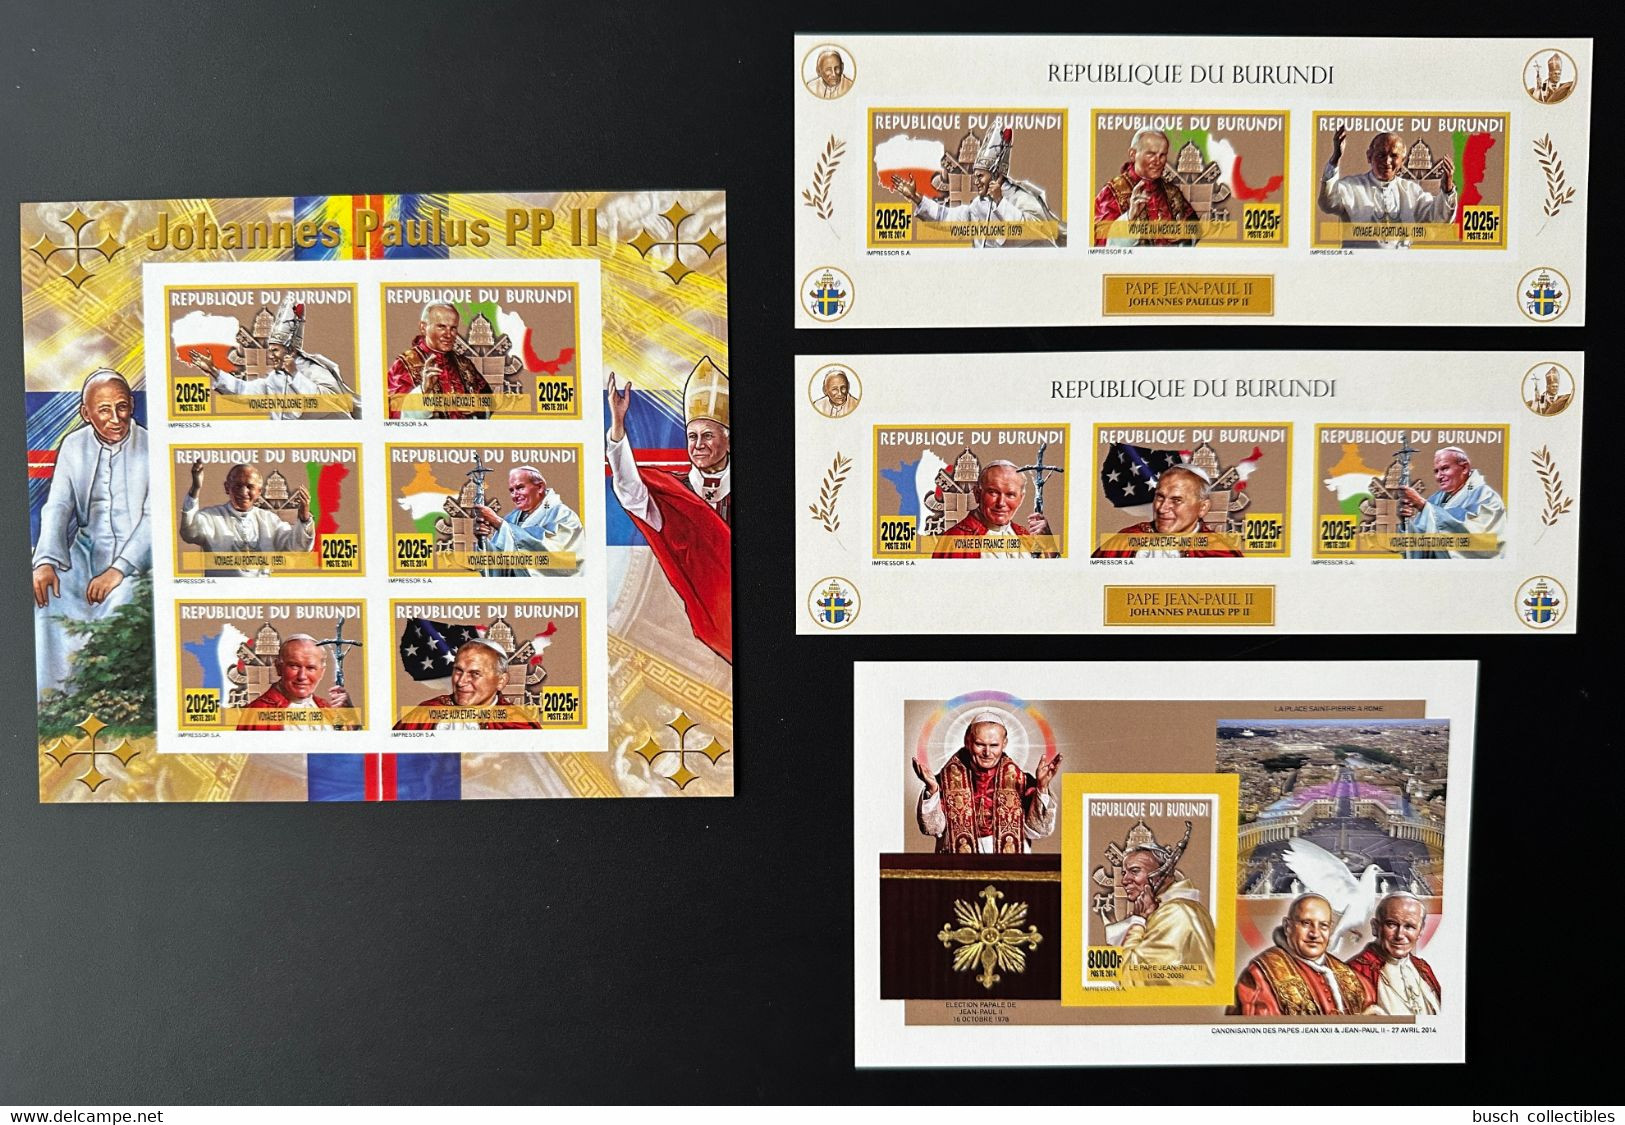 Burundi 2014 / 2015 IMPERF ND Mi. 3506 - 3511 Bl. 519 - 520 Johannes Paulus PP II Pape Pope Jean Paul John Papst - Unused Stamps